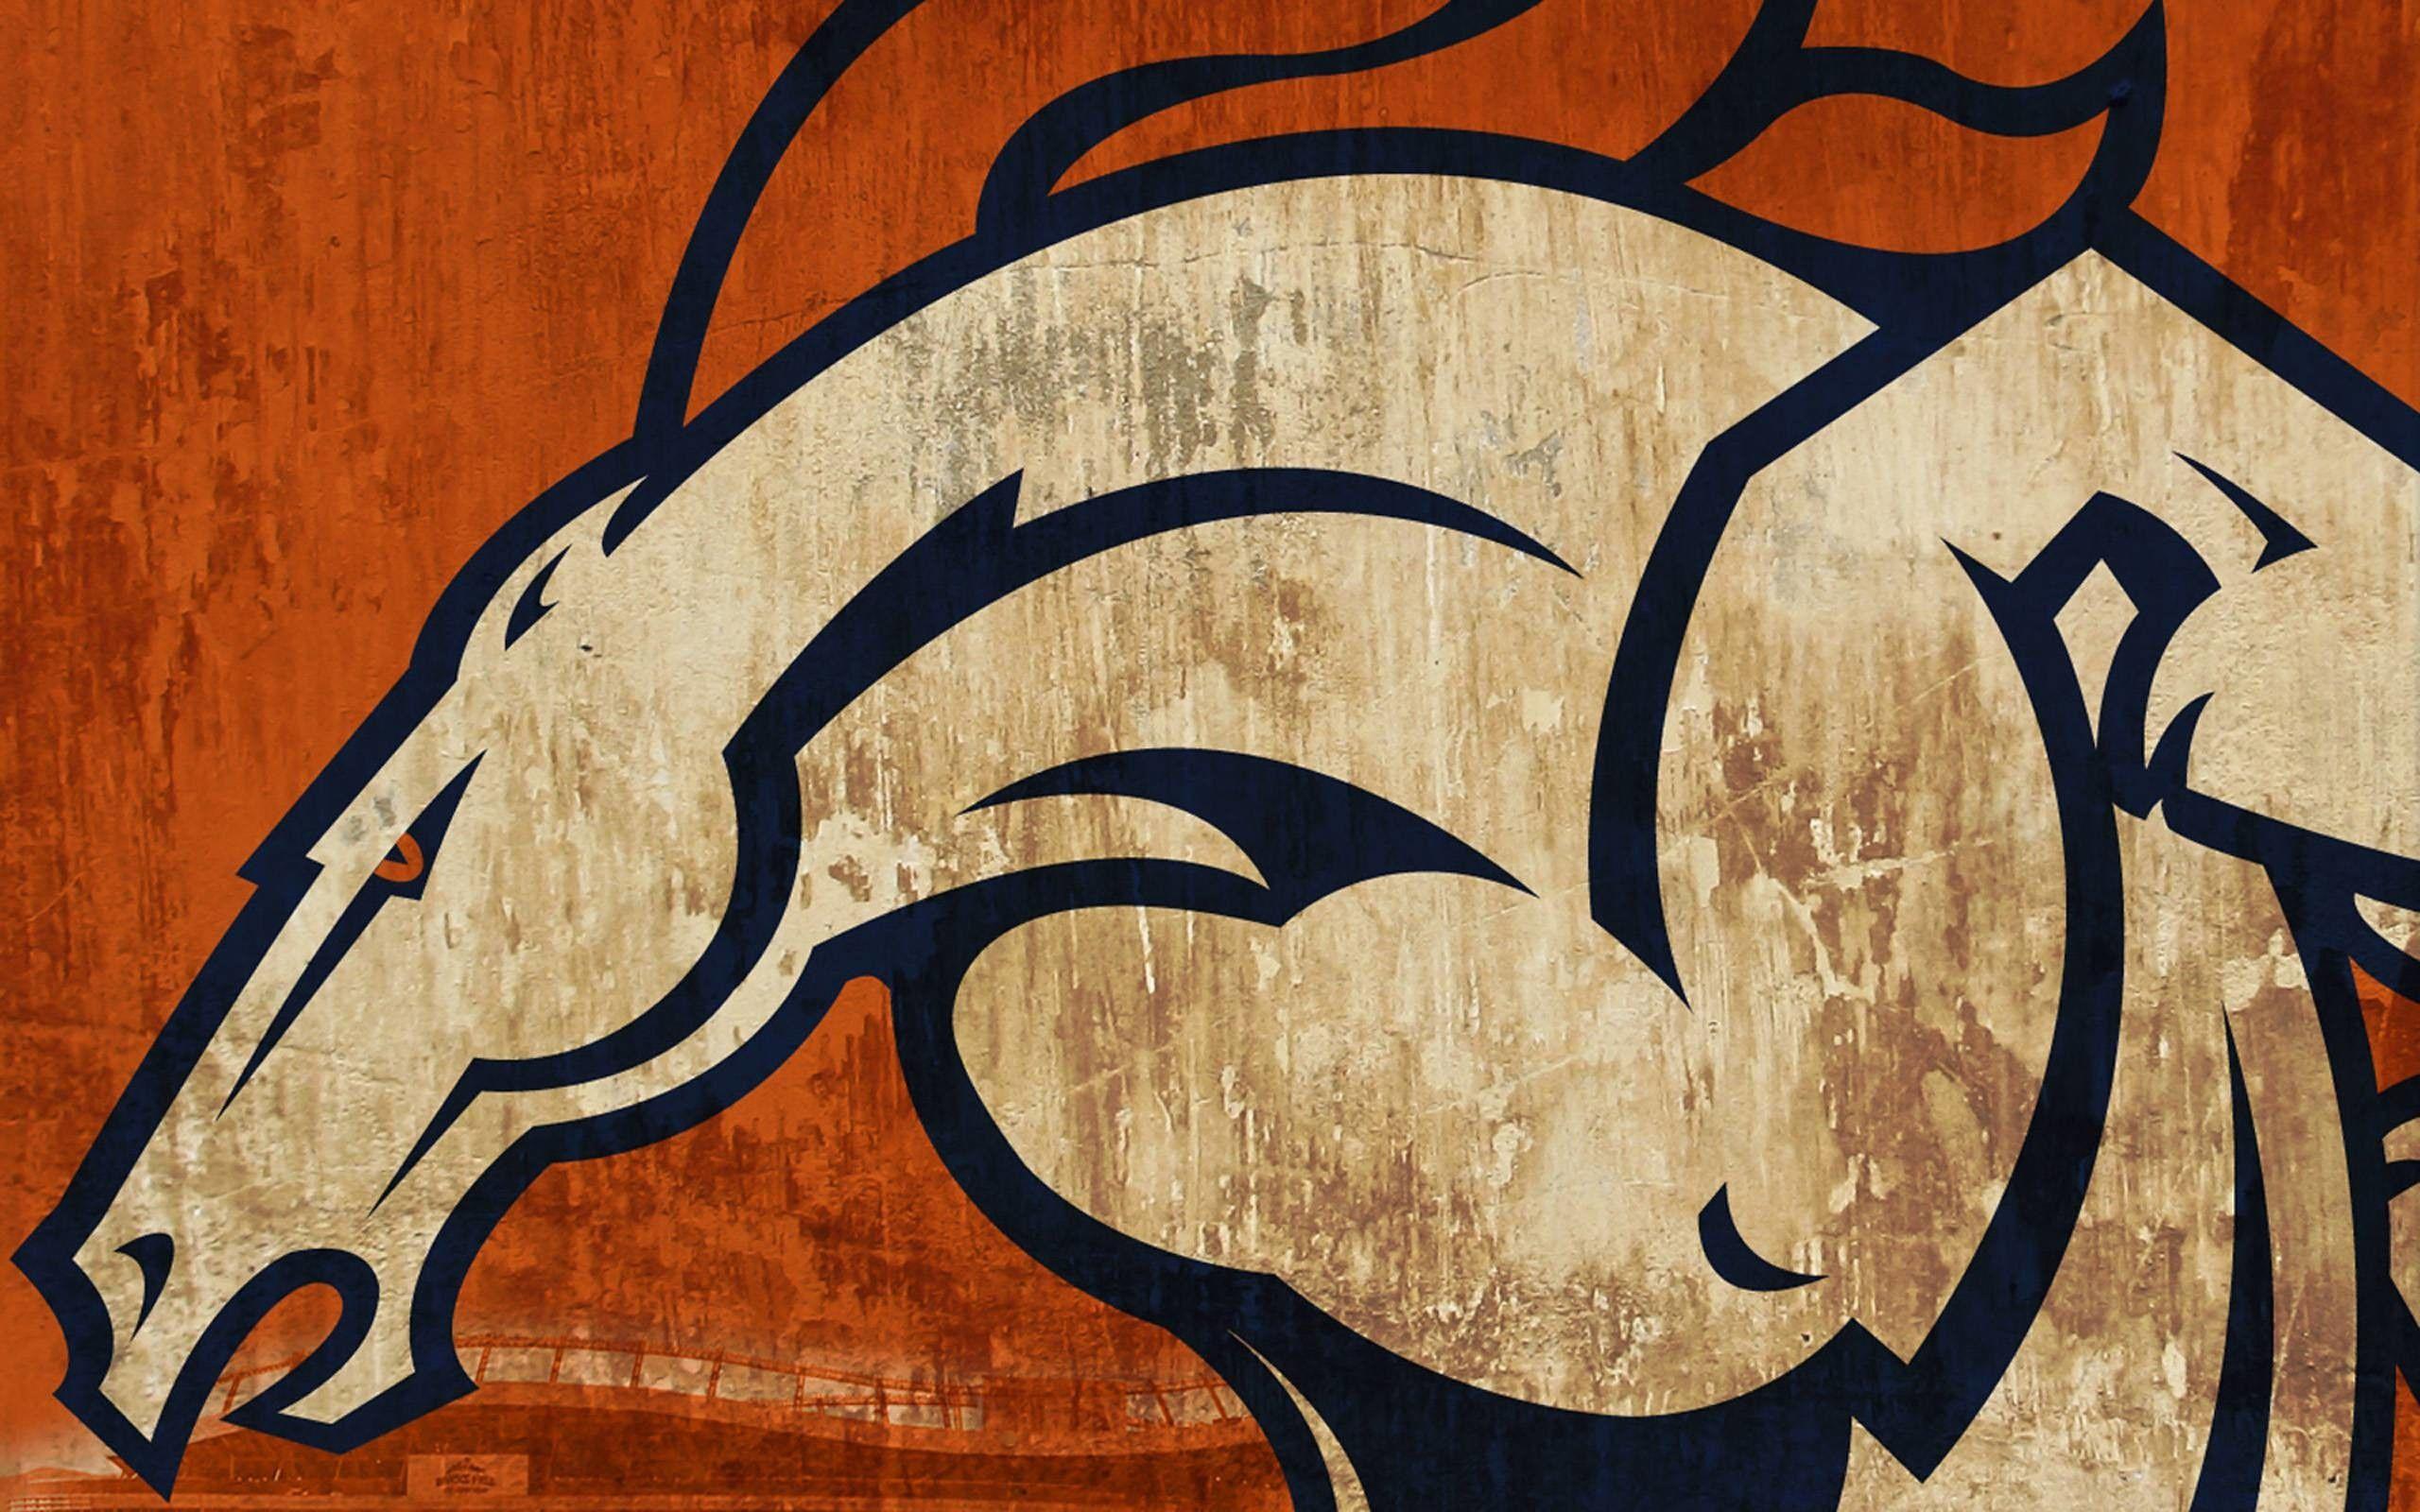 Denver Broncos Wallpapers - Top Free Denver Broncos Backgrounds